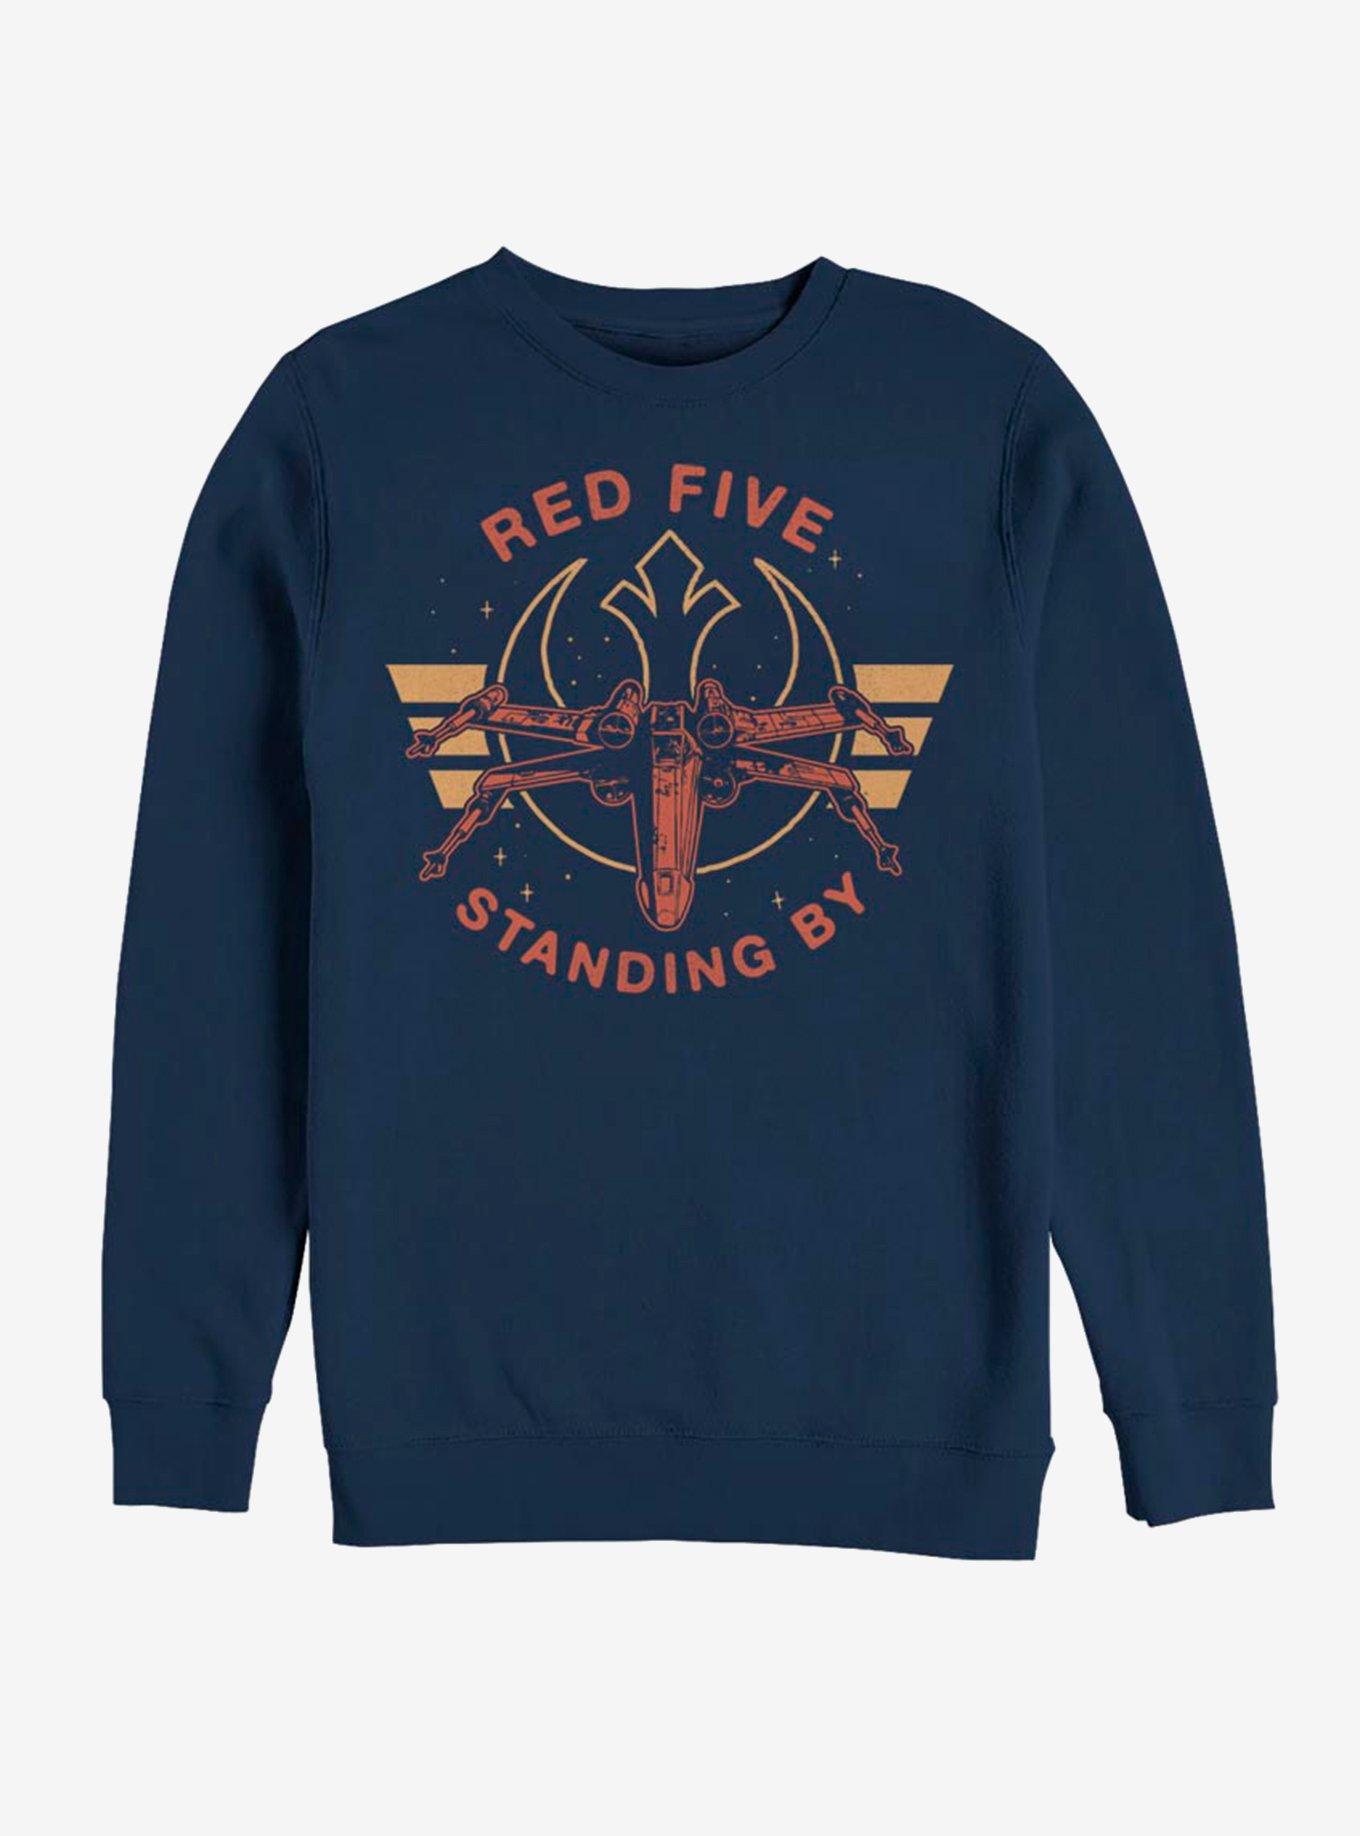 Star Wars Red Five Sweatshirt, NAVY, hi-res